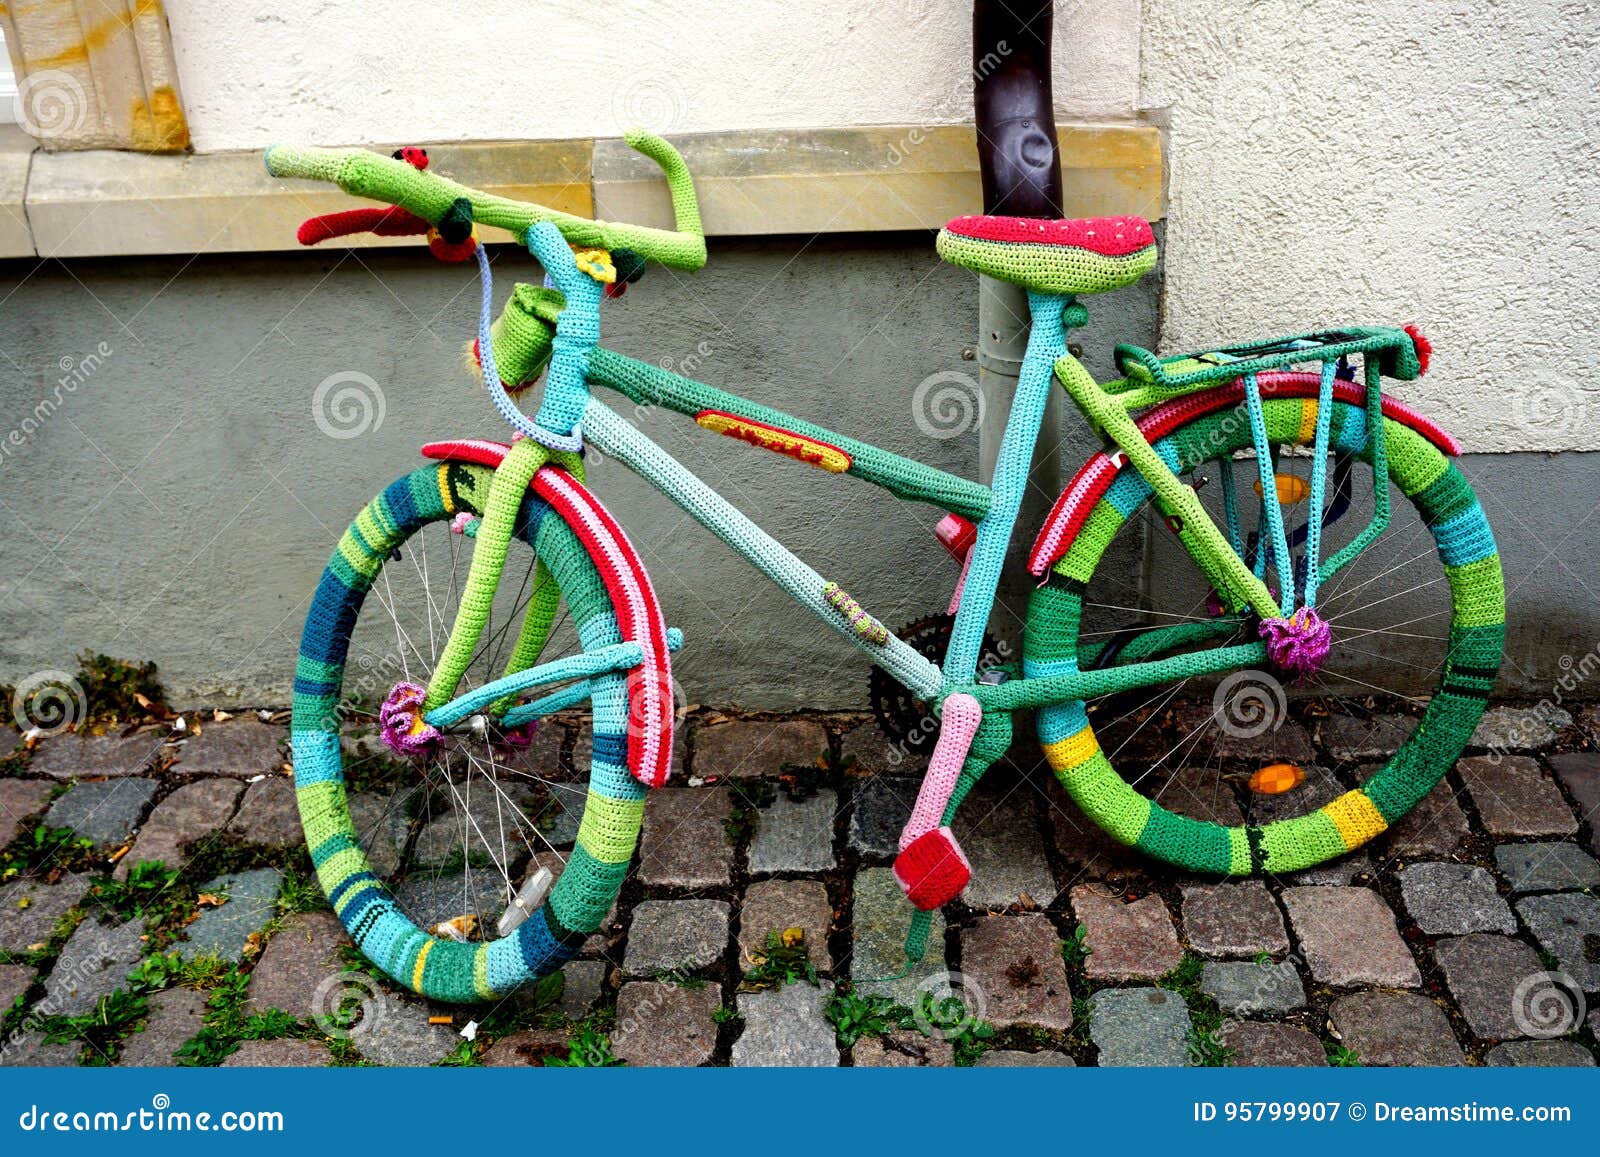 bicicleta de lana